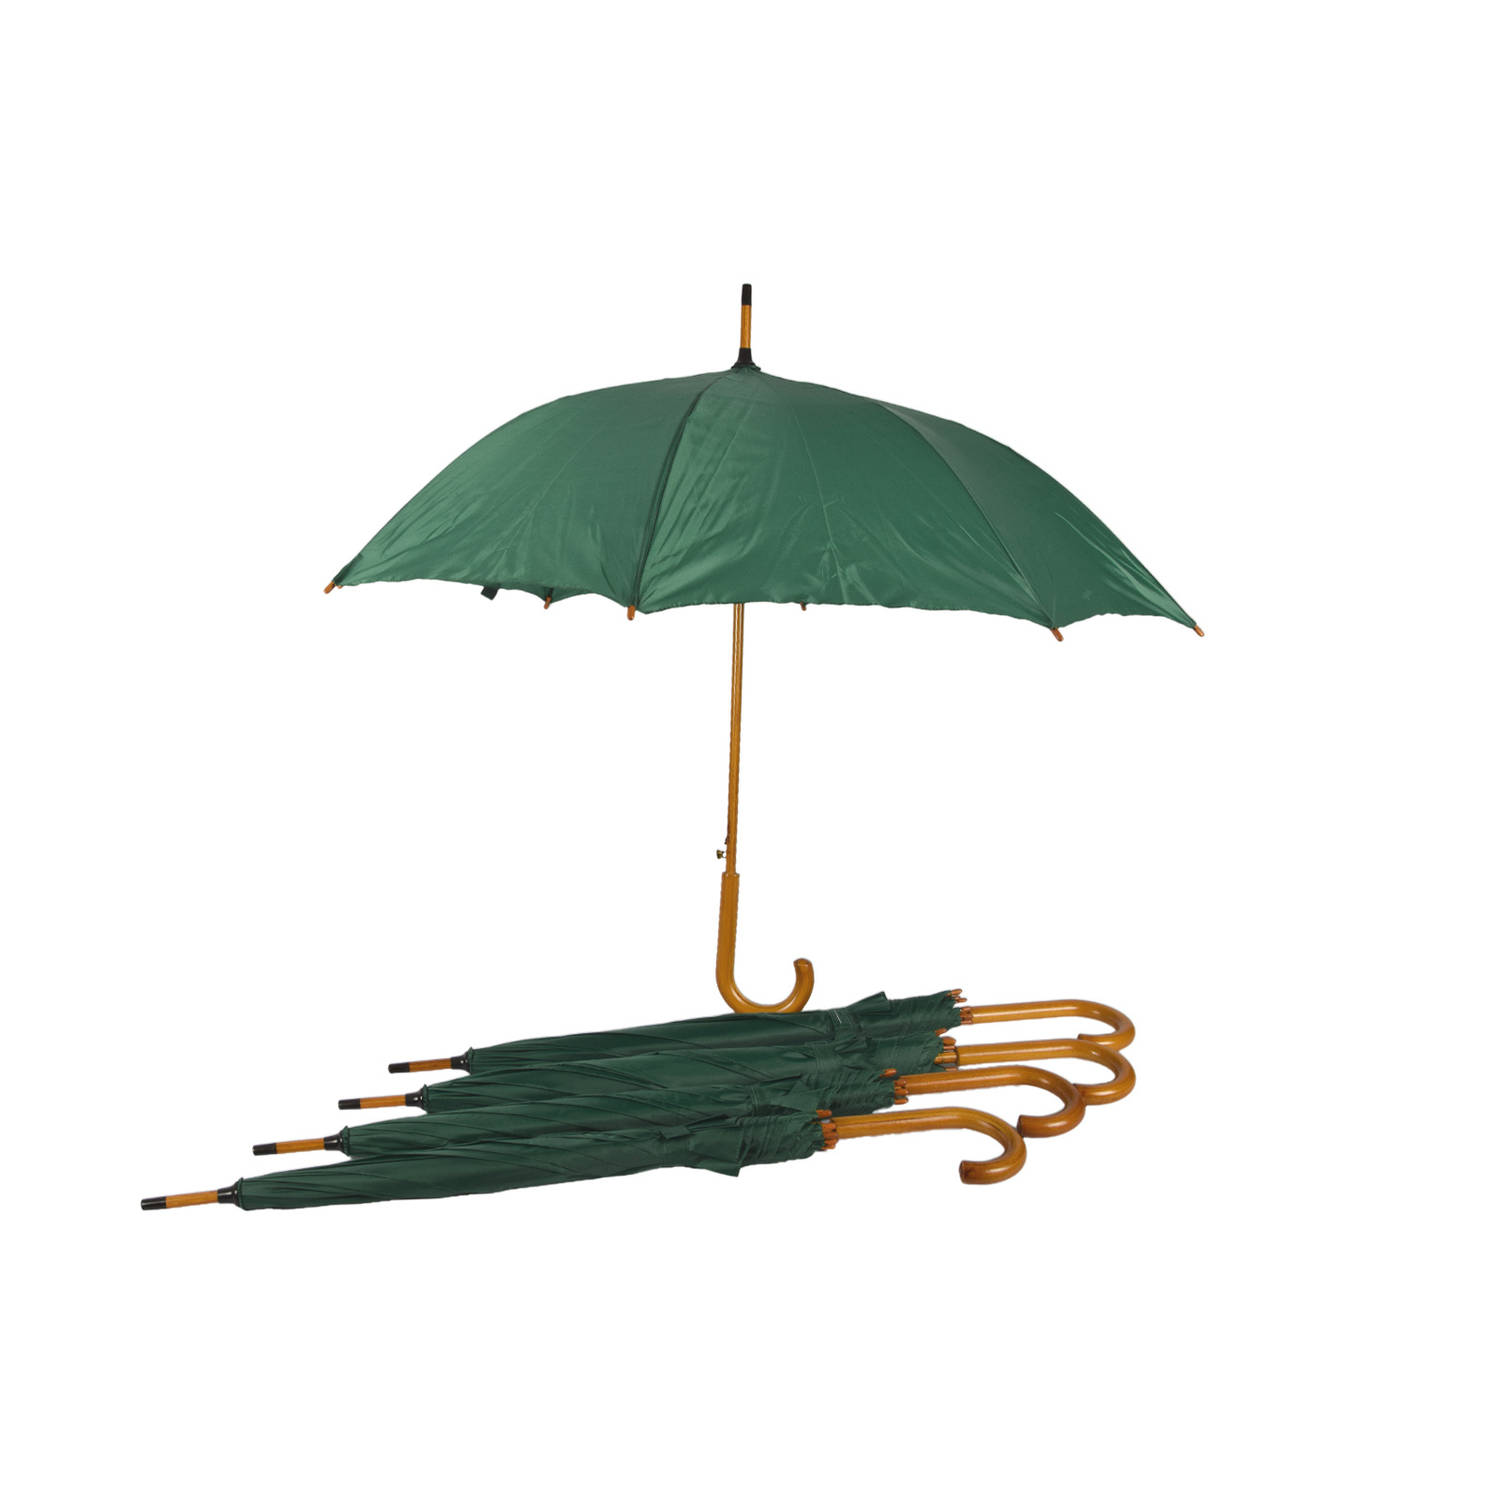 Set van 5 Groene Automatische Opvouwbare Paraplu's | Diameter 102 cm | Windbestendig en Waterdicht